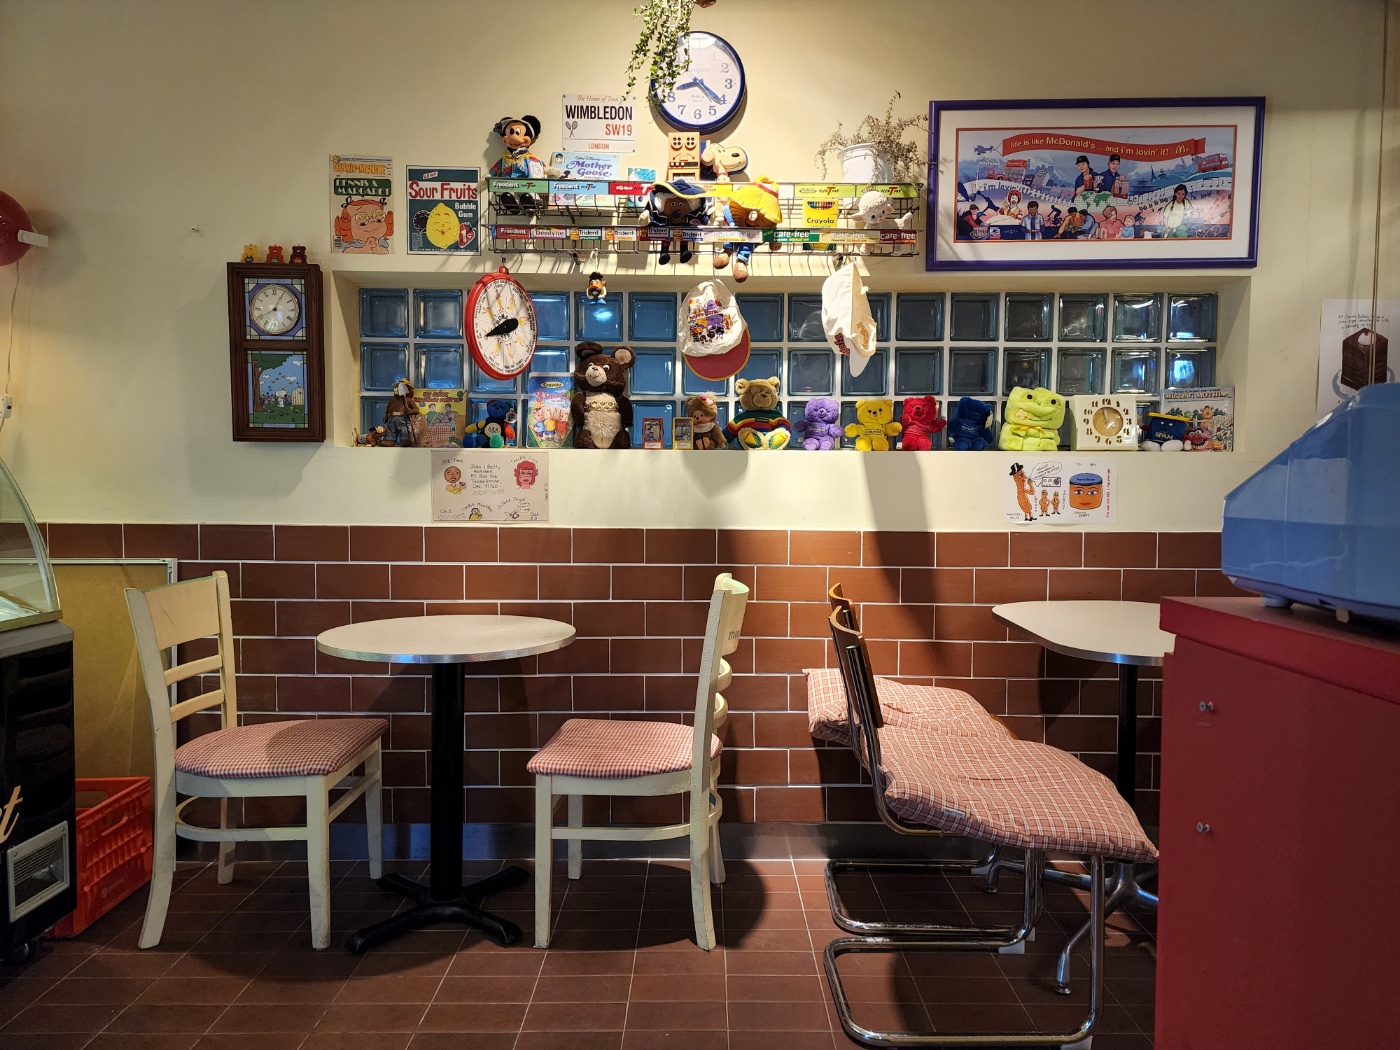 카페 내부의 아쿠아창문과 벽면에 다양한 장식품으로 꾸며진 테이블 자리 전경